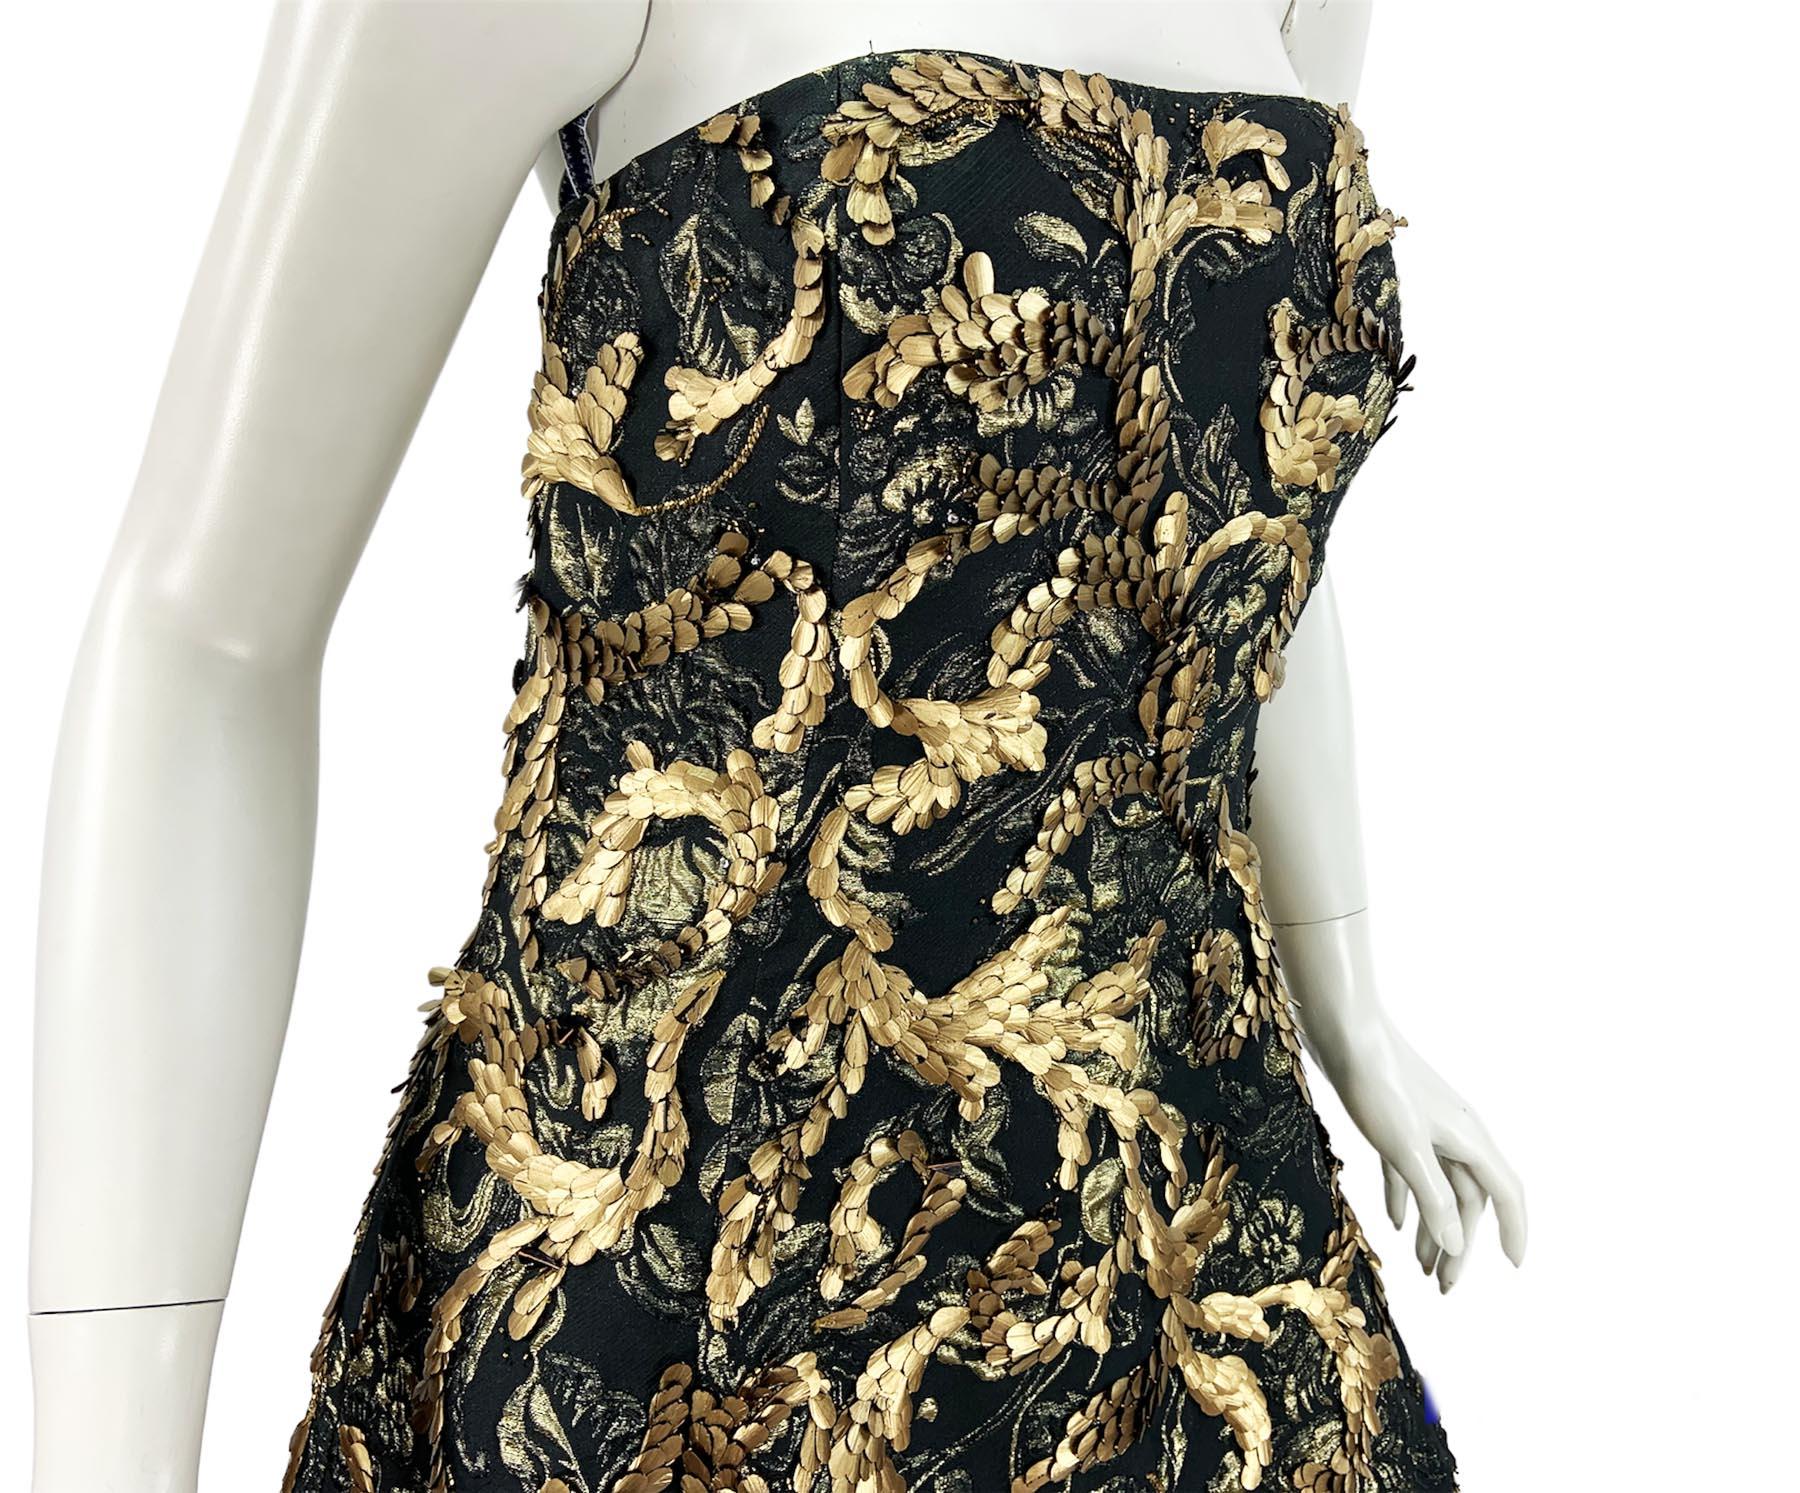 Oscar de la Renta FW 2014 Runway Museum Red Carpet Black Gold Gown Dress L / XL For Sale 8